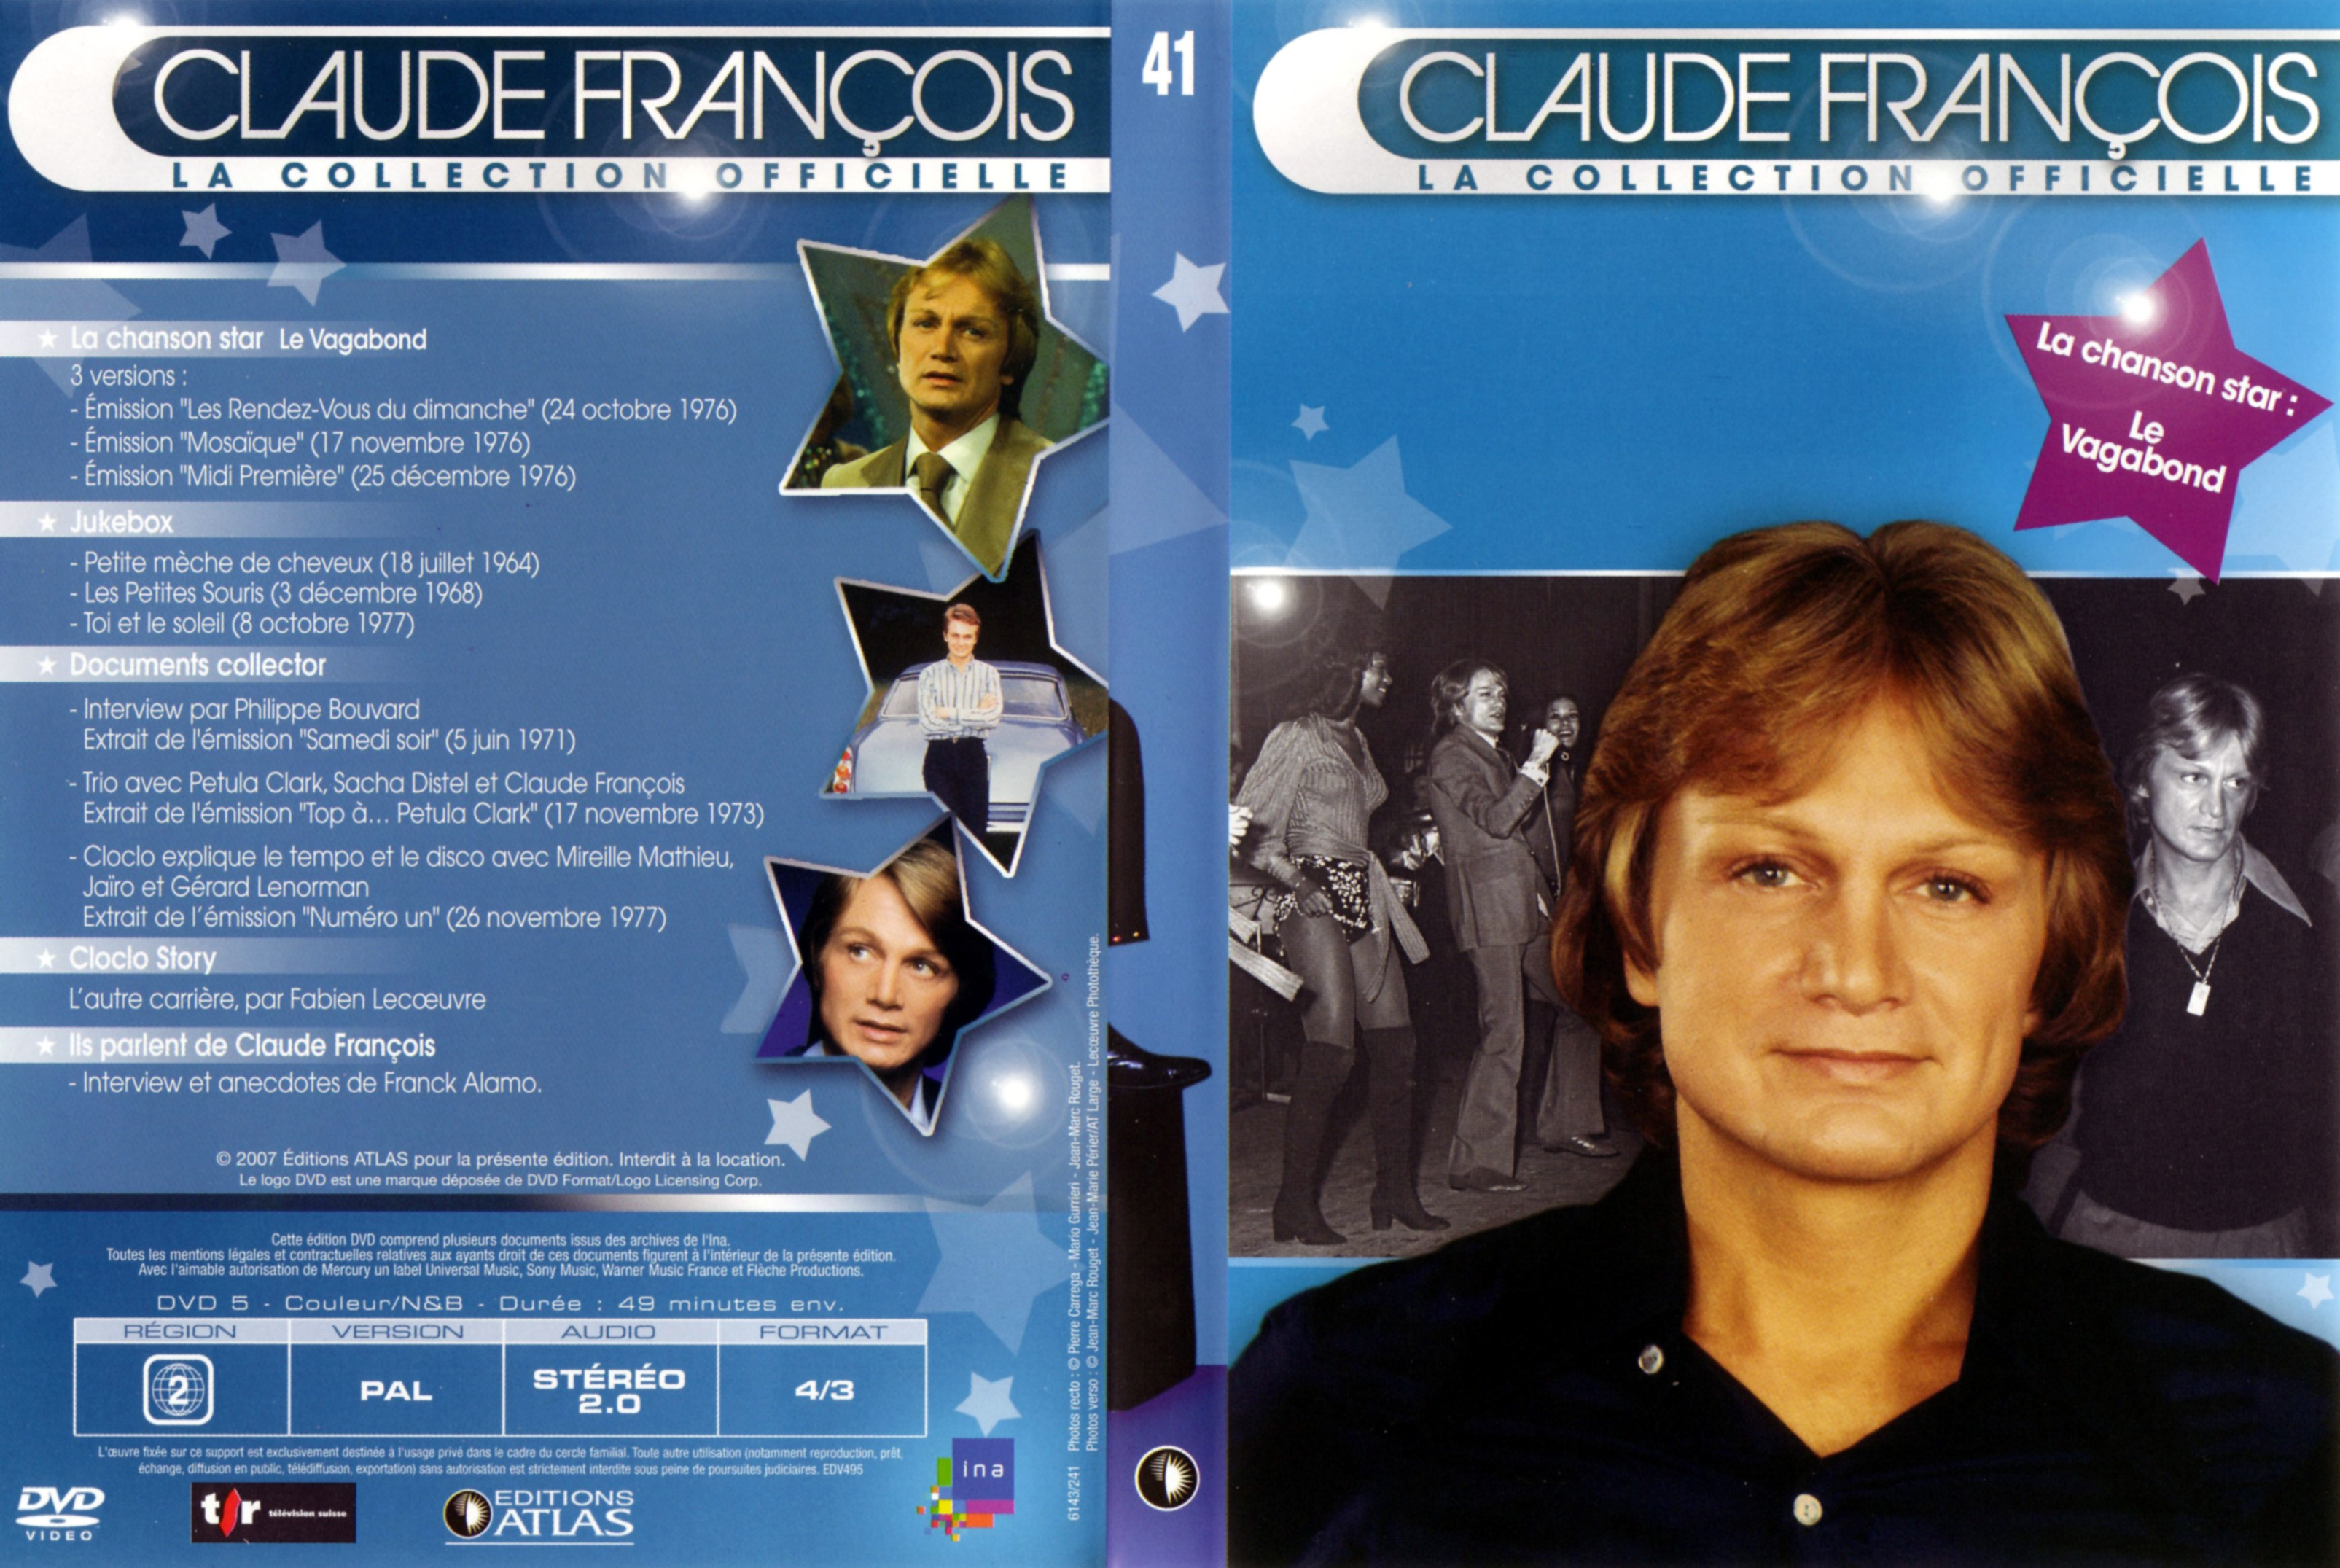 Jaquette DVD de Claude Francois la collection officielle vol 41 - Cinéma  Passion